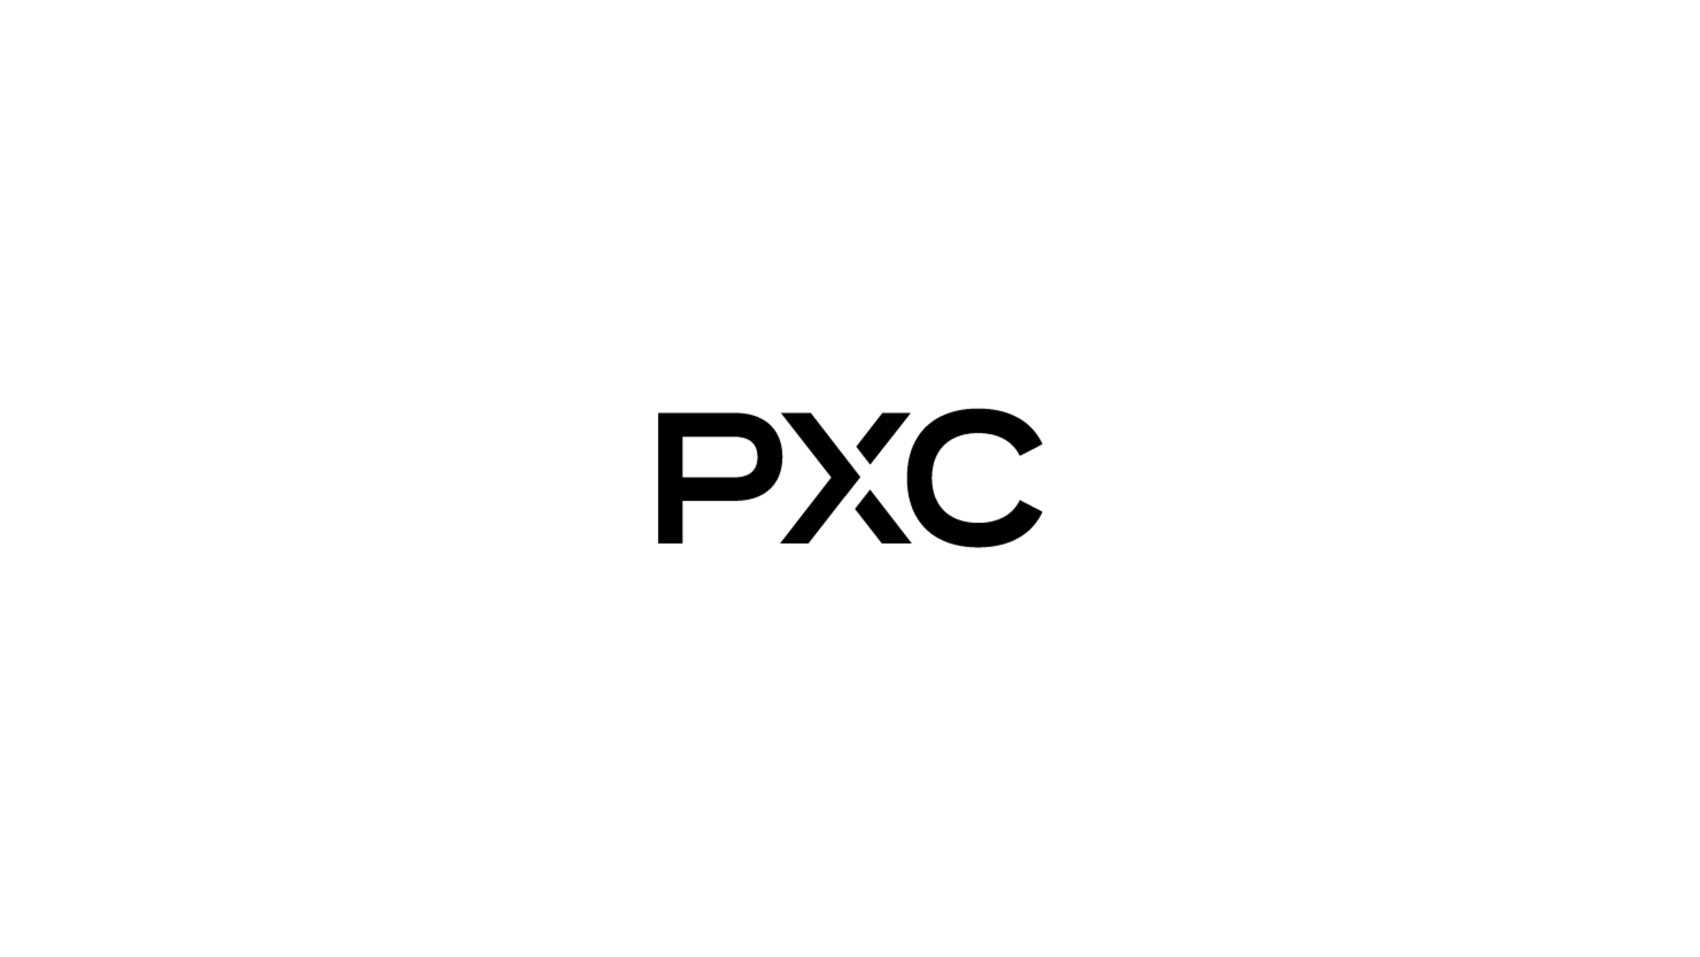 PXC_short_logo_graphic_large_resized.png